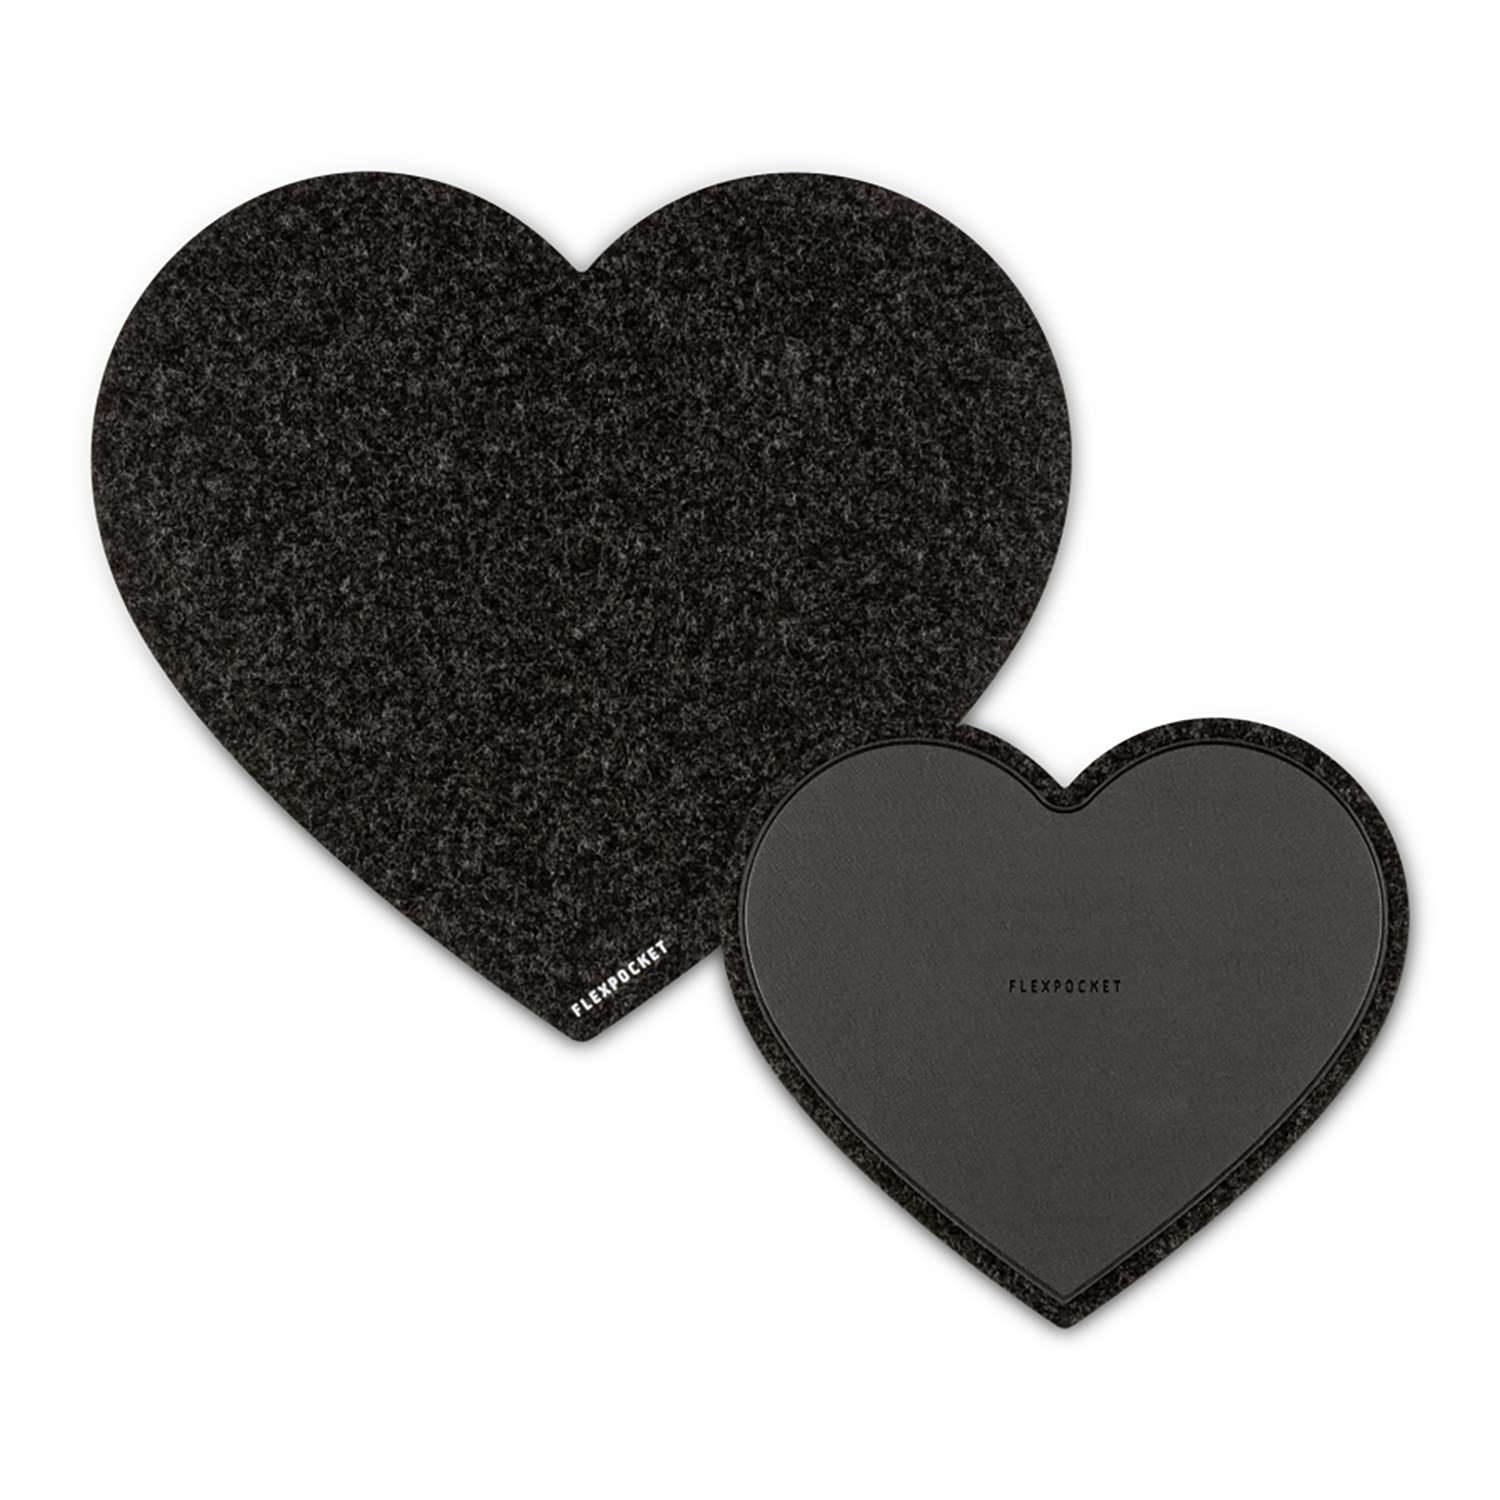 Настольный коврик Flexpocket для мыши в виде сердца с подставкой под кружку черный 2 шт в комплекте - фото 1